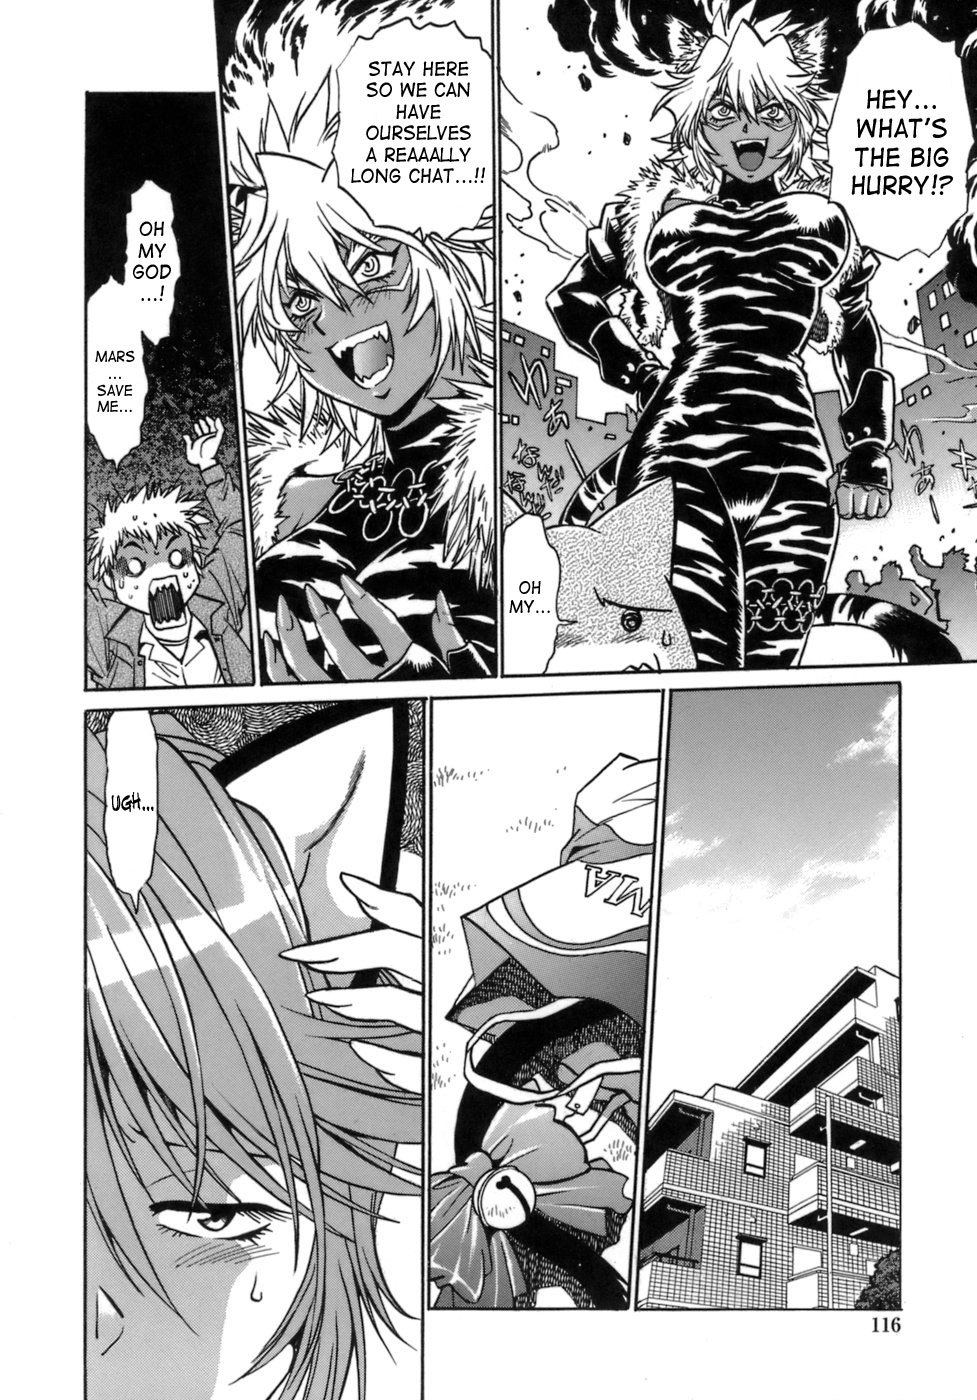 Tail Chaser Vol.1 113 hentai manga